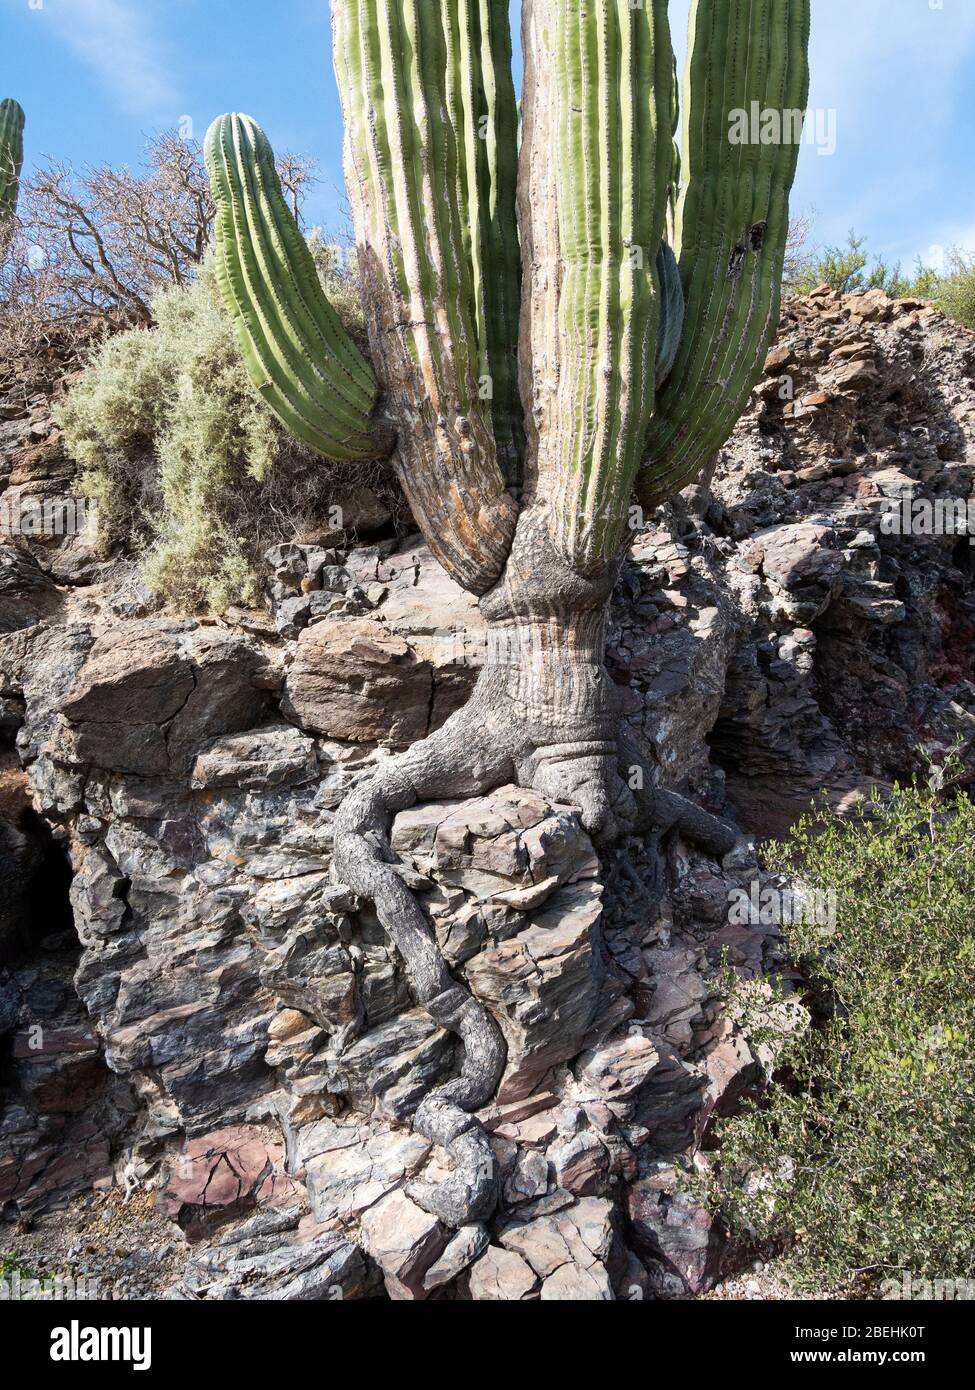 Exponierte Wurzeln des Riesencordon Kaktus (Pachycereus pringlei) Isla San Esteban, Baja California, Mexiko. Stockfoto